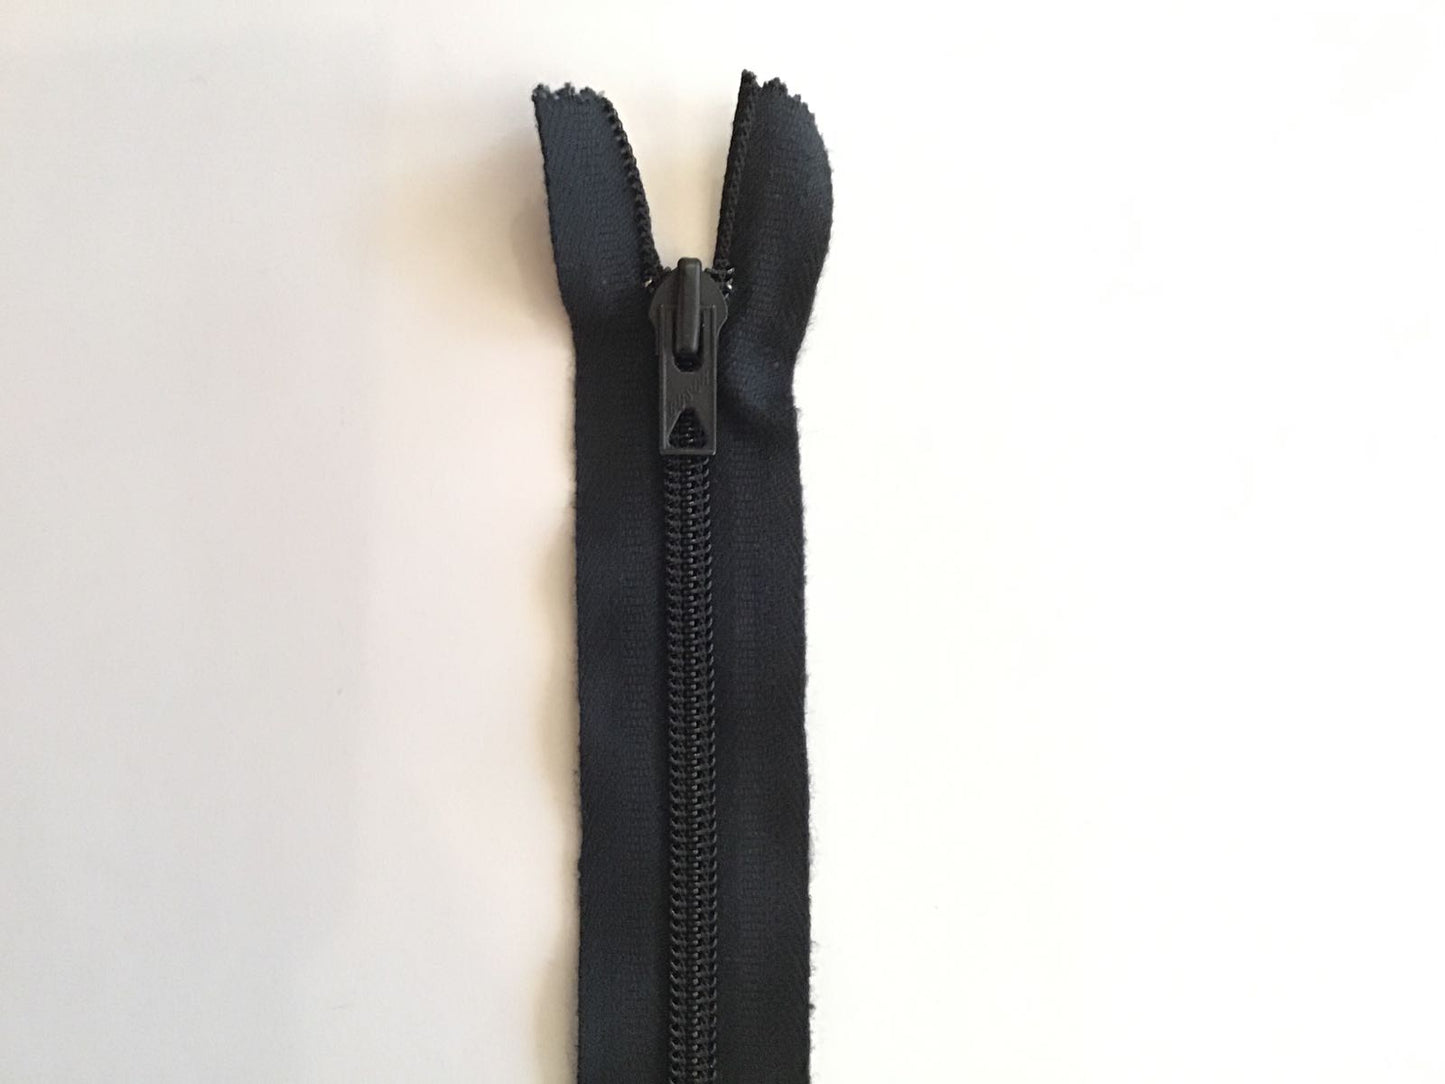 Spiral zipper non-divisible 40 cm